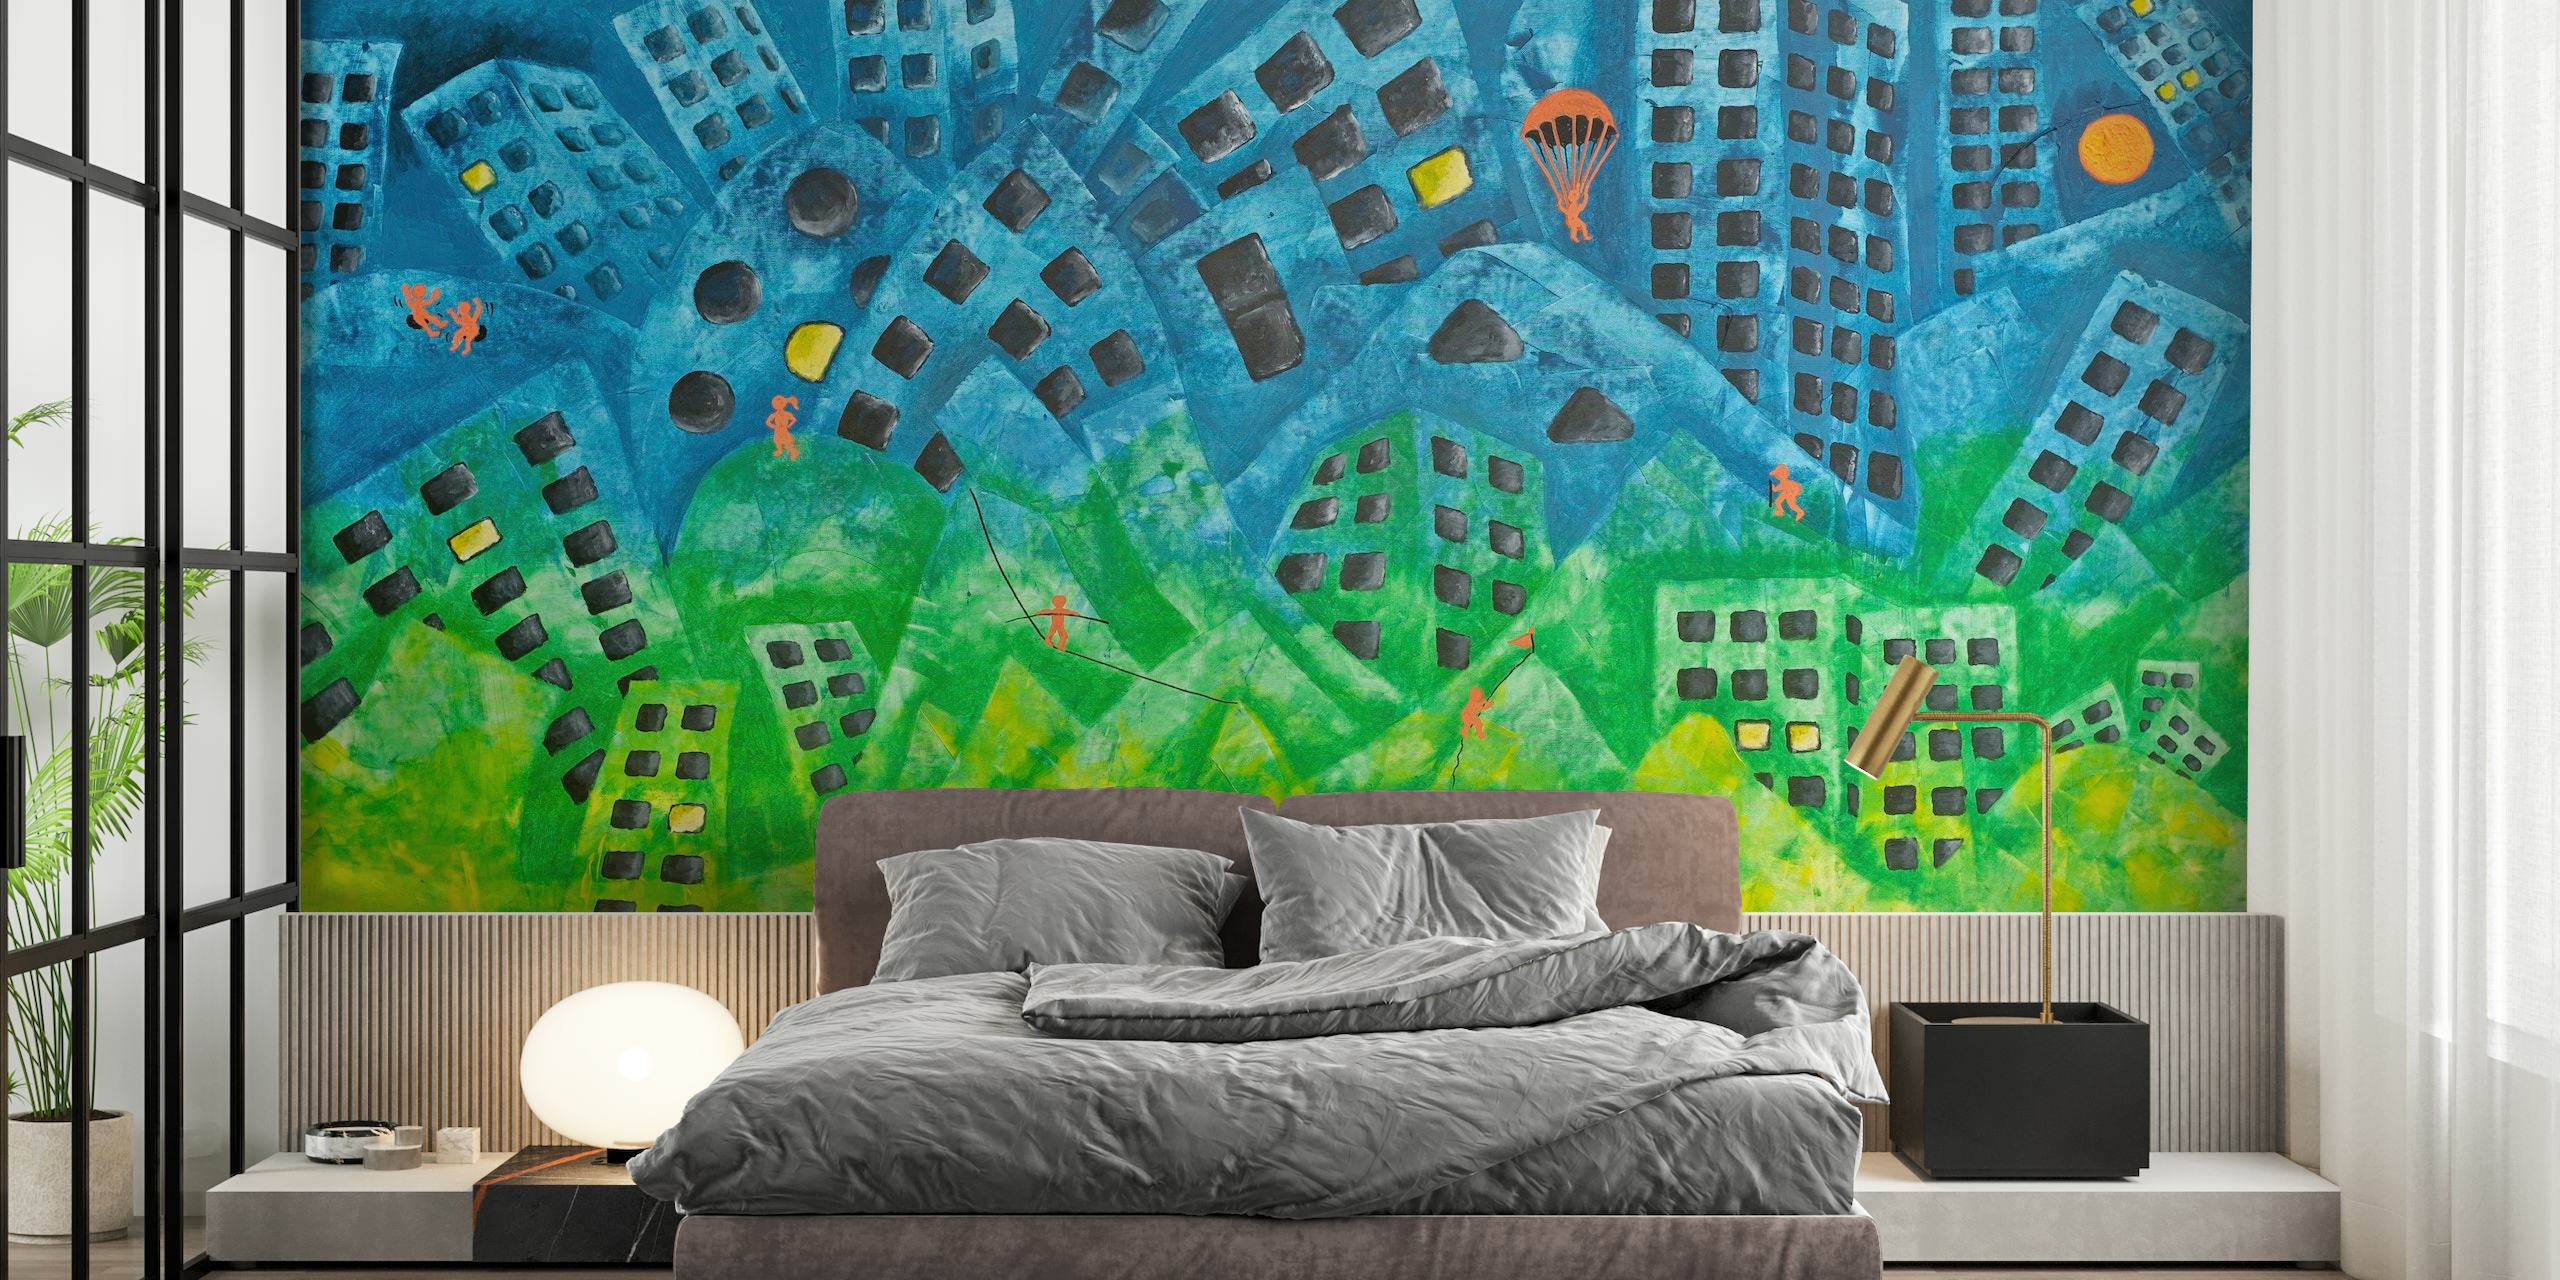 Abstract stedelijk stadsgezicht fotobehang met grillige wolkenkrabbers en levendige kleuren